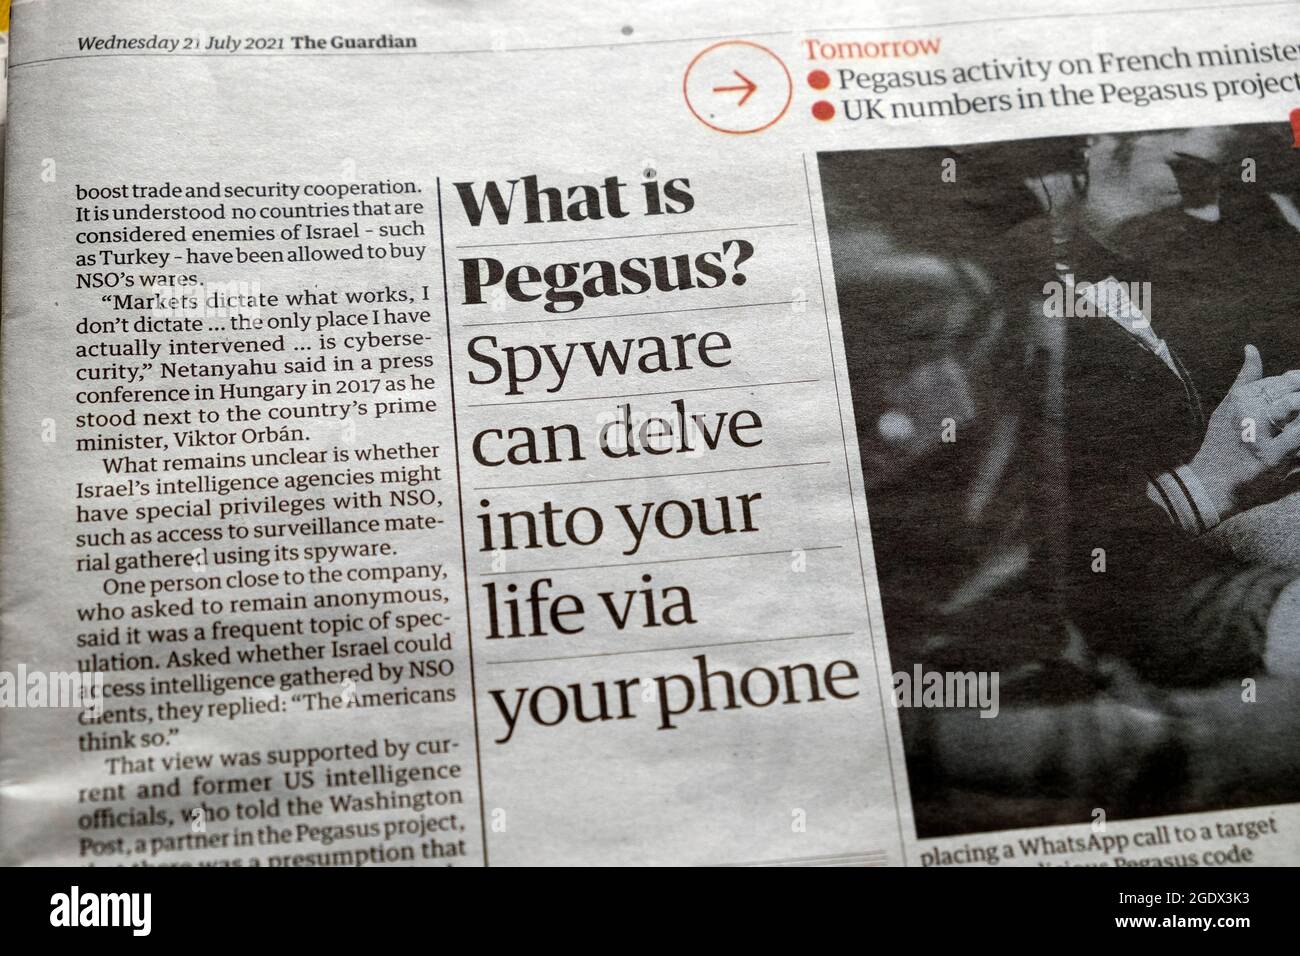 Giornale Guardian titolo articolo sul telefono cellulare il 21 luglio 2021 'Cos'è Pegasus? Lo spyware può tuffarsi nella vostra vita con il vostro telefono ' Londra Inghilterra Regno Unito Foto Stock